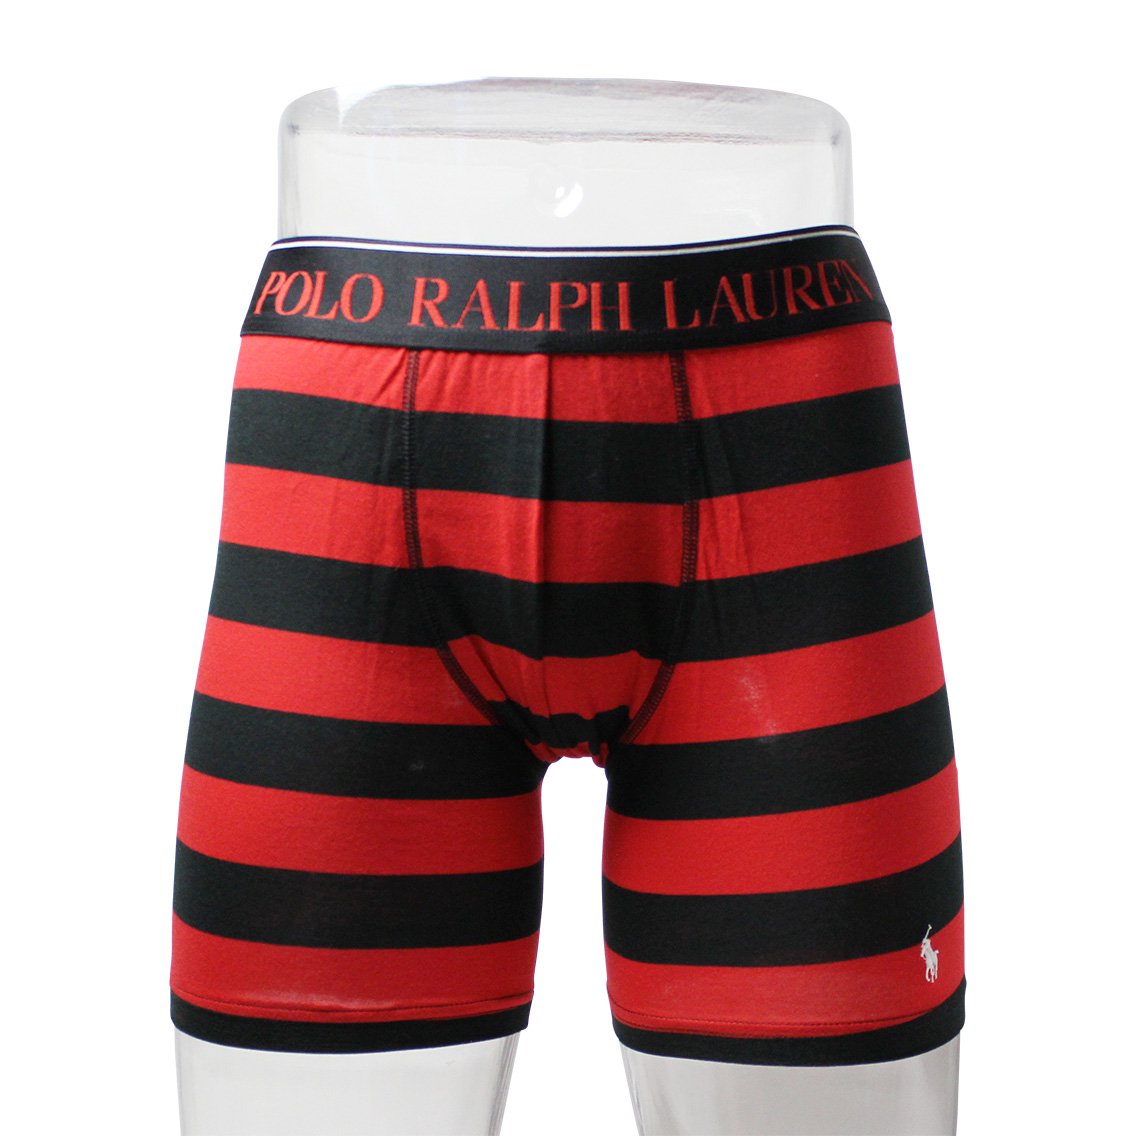 Polo Ralph Lauren(ポロラルフローレン)[L999HR-3TC]:ボクサーパンツ,男性下着,インナーの通販